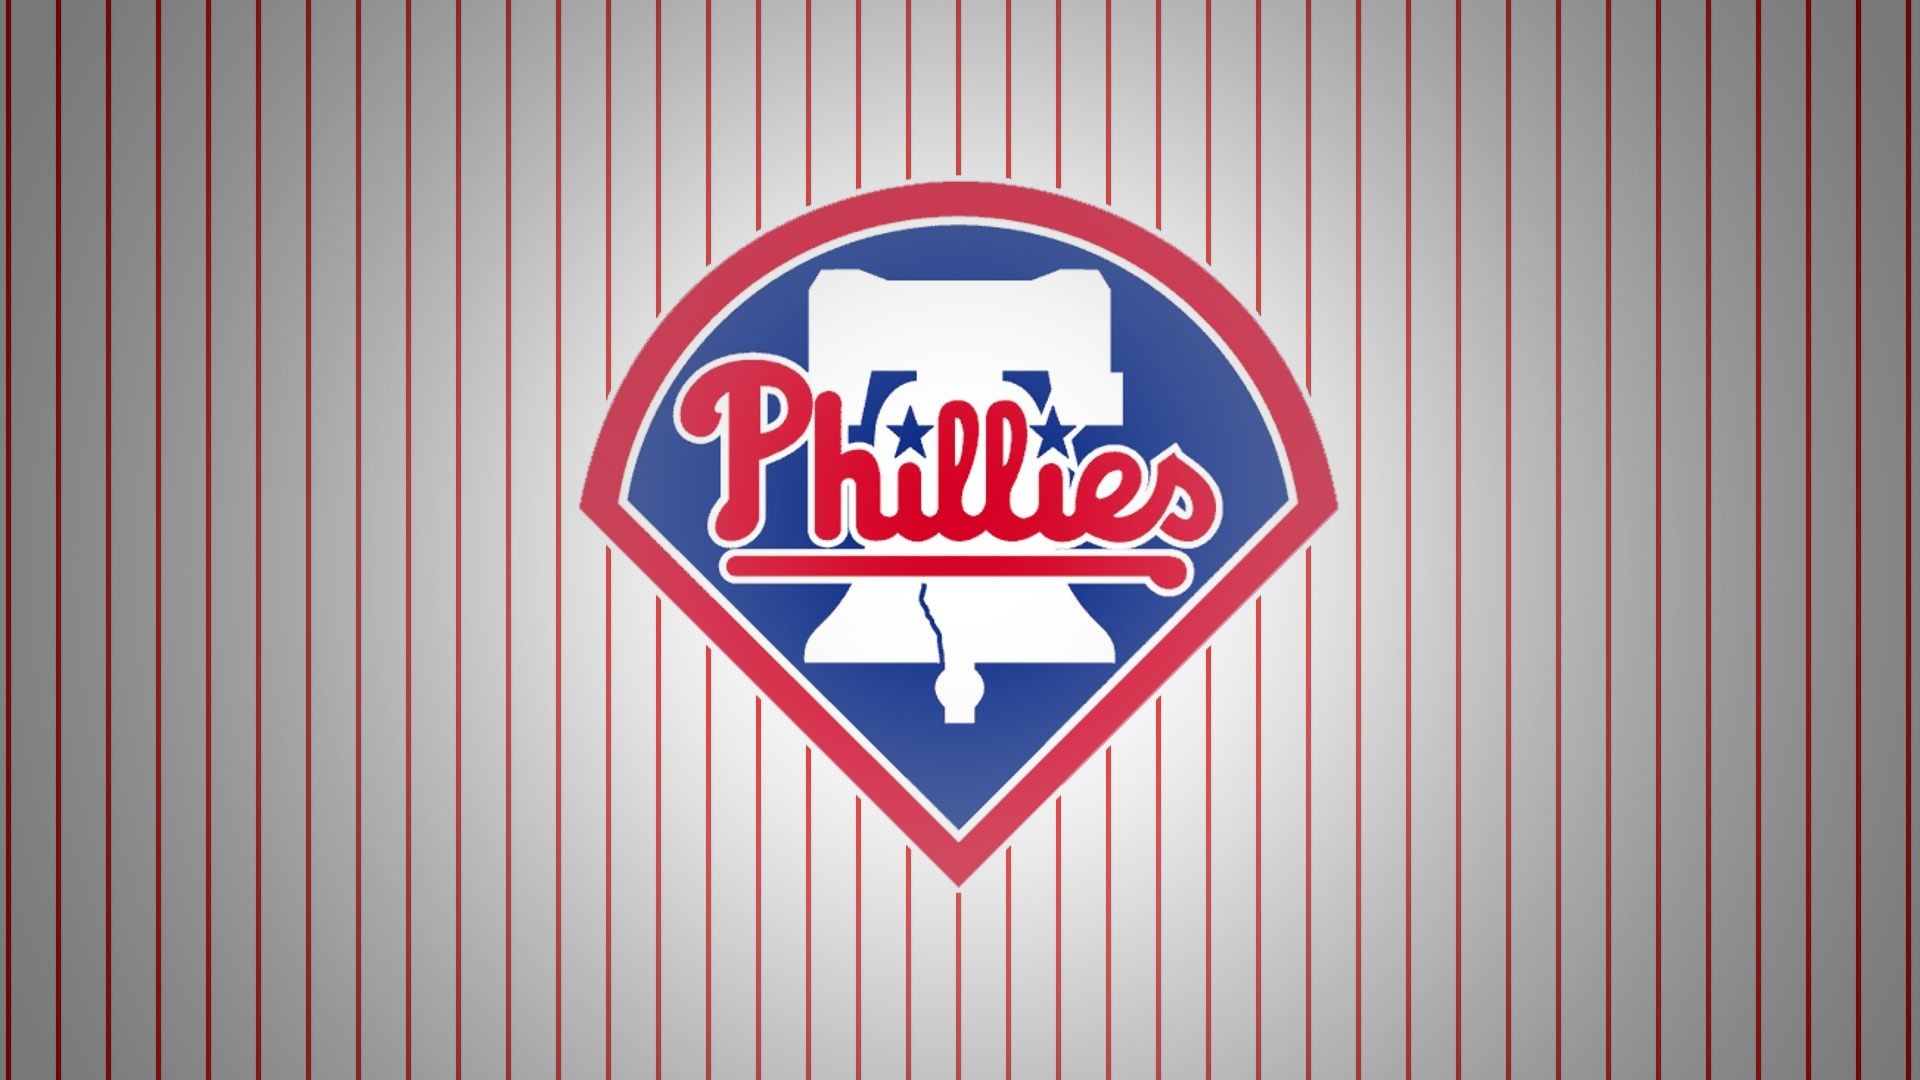 1920x1080 30 in 30: The Philadelphia Phillies